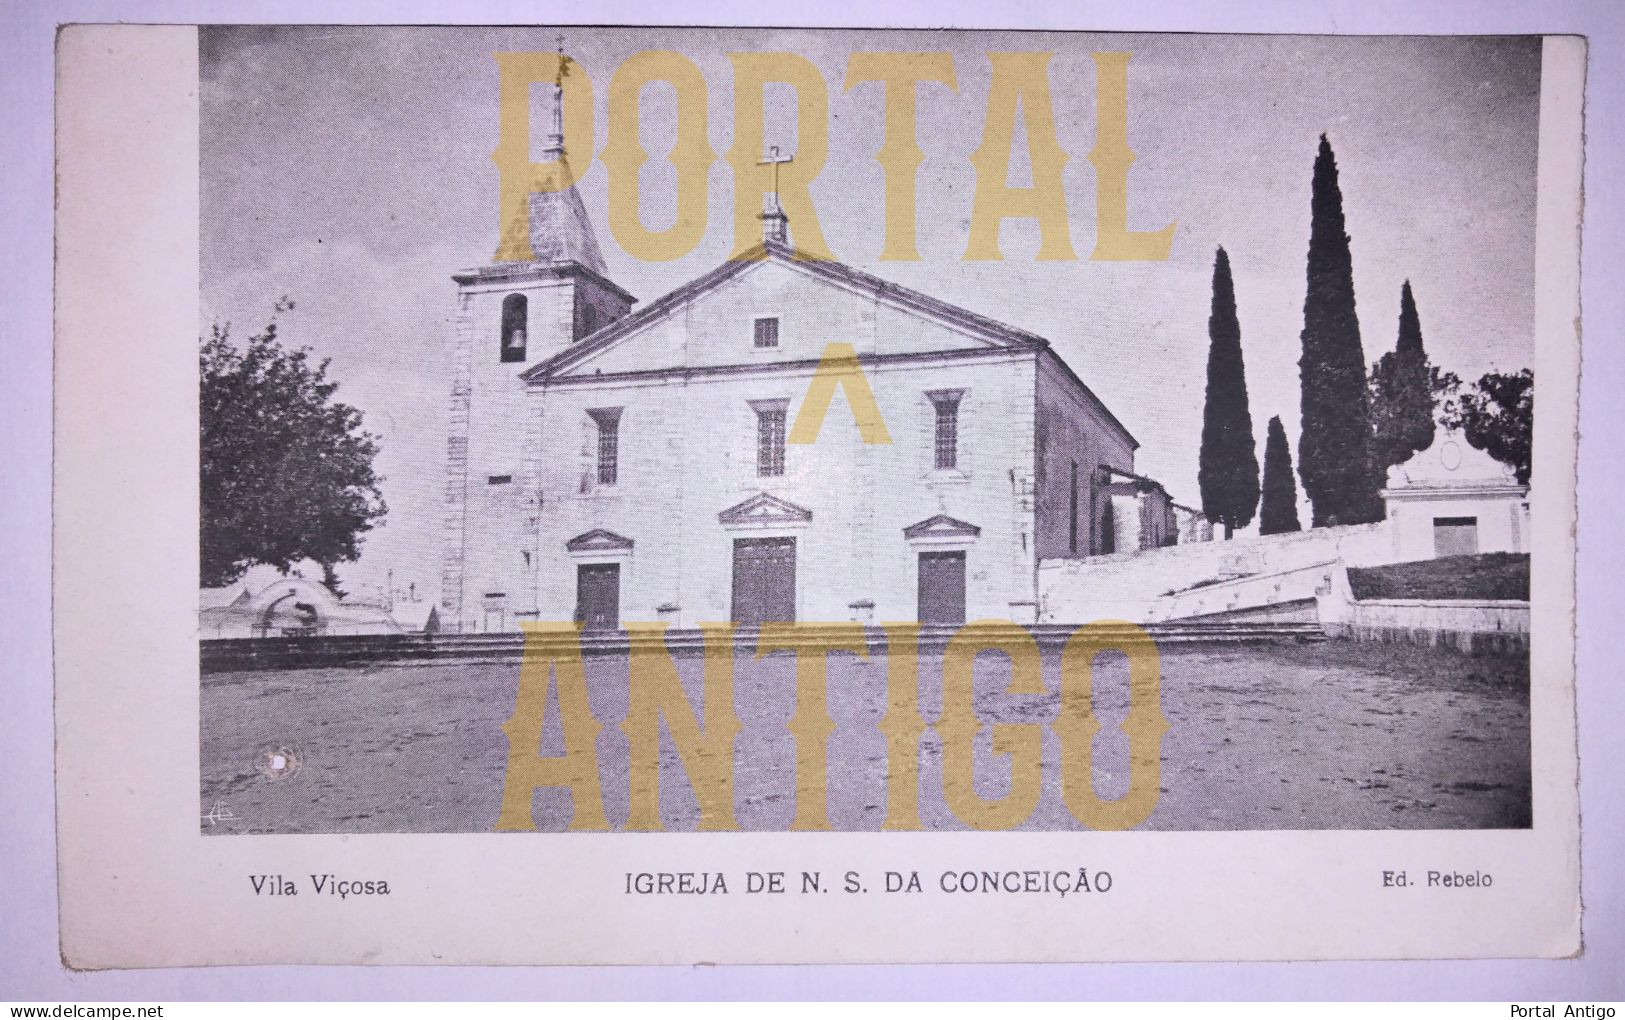 VILA VIÇOSA - Igreja De N. S. Da Conceição - Évora - Edição Rebelo - Portugal ( 2 Scans) - Evora